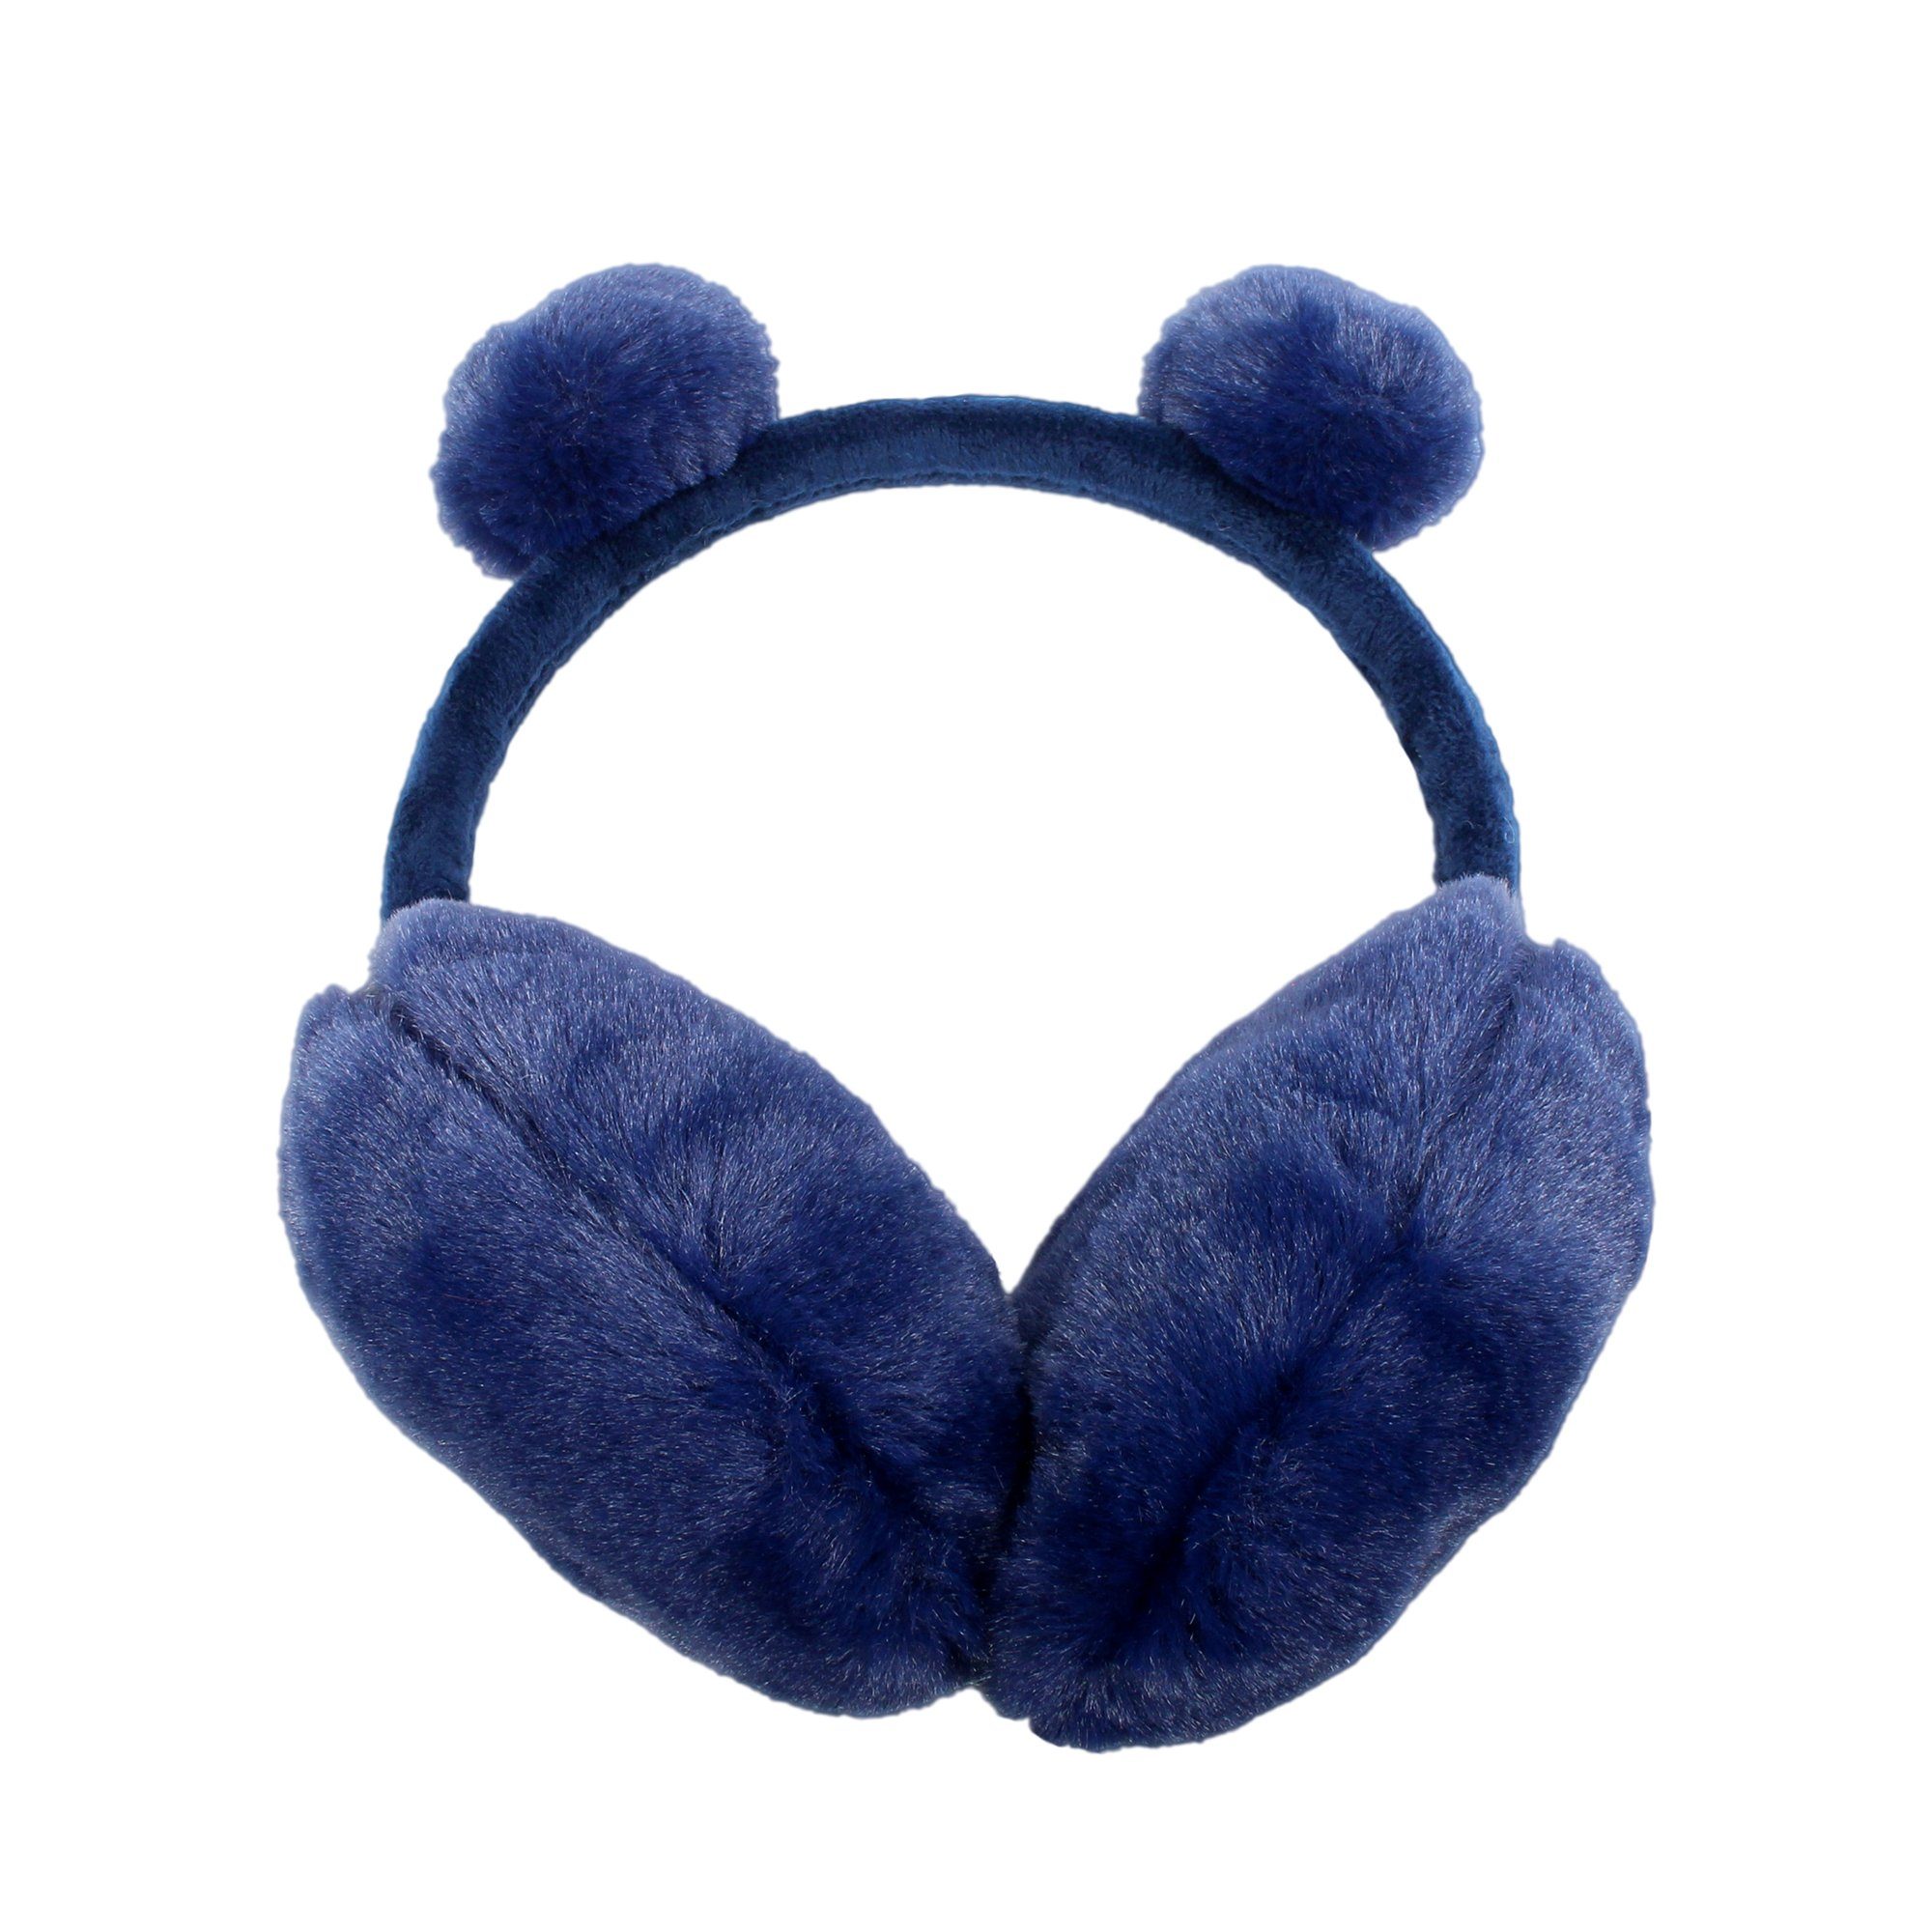 ZEBRO blau Ohrenwärmer Ohrenschützer